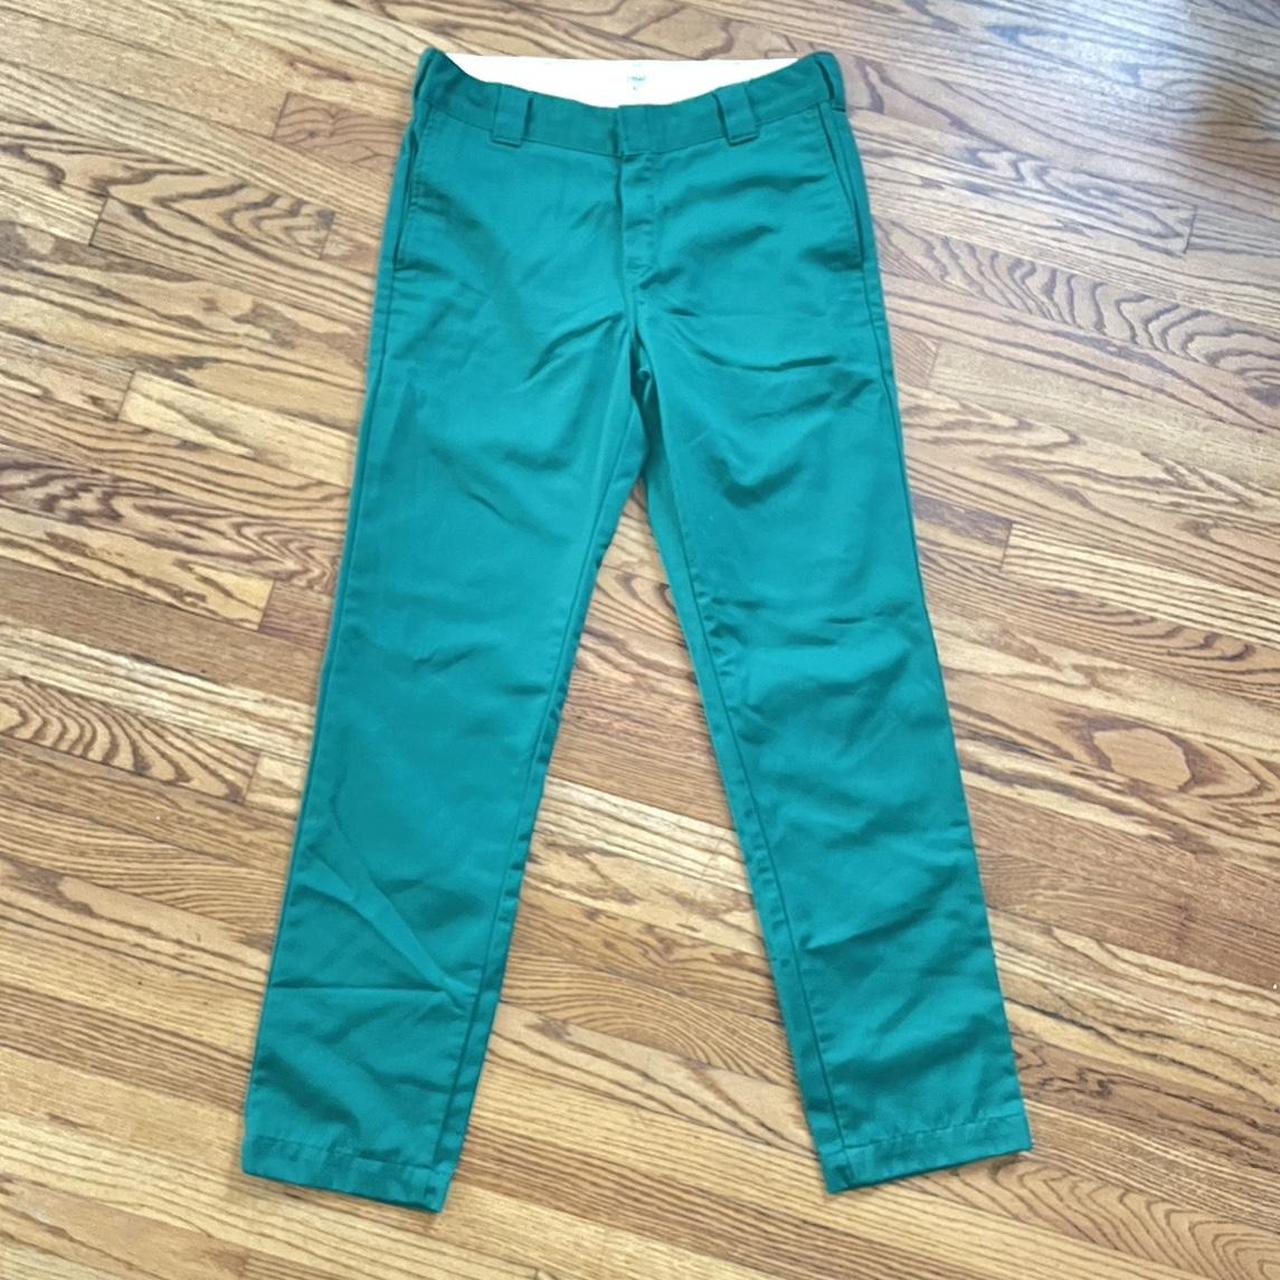 Carhartt WIP kelly green pants size 30 x 32 like new - Depop